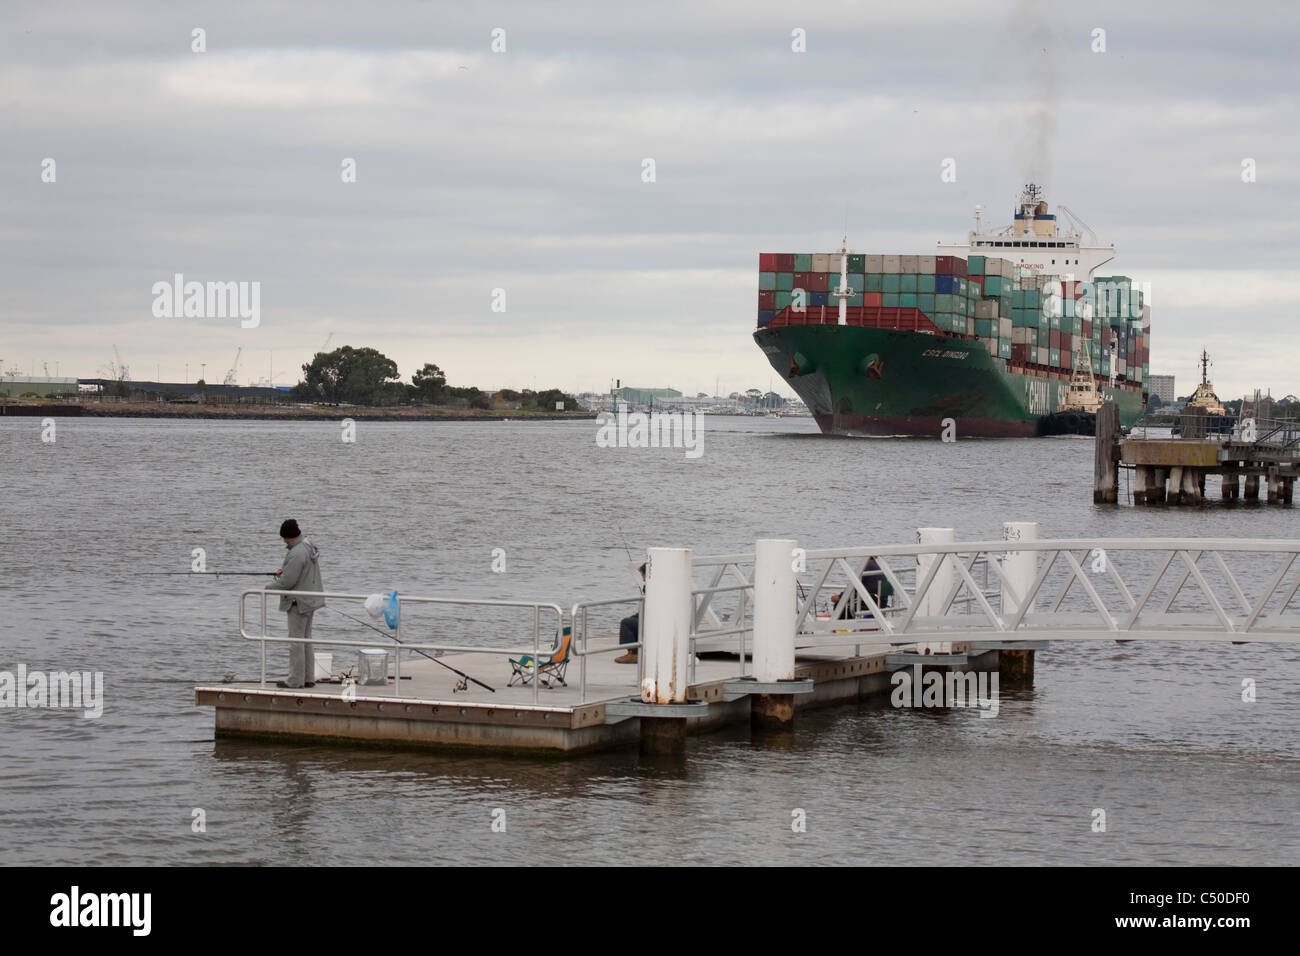 Regardant pêcheur-conteneur étant assisté par des remorqueurs jusqu'à la rivière Yarra Melbourne Australie Docks Swanson Banque D'Images